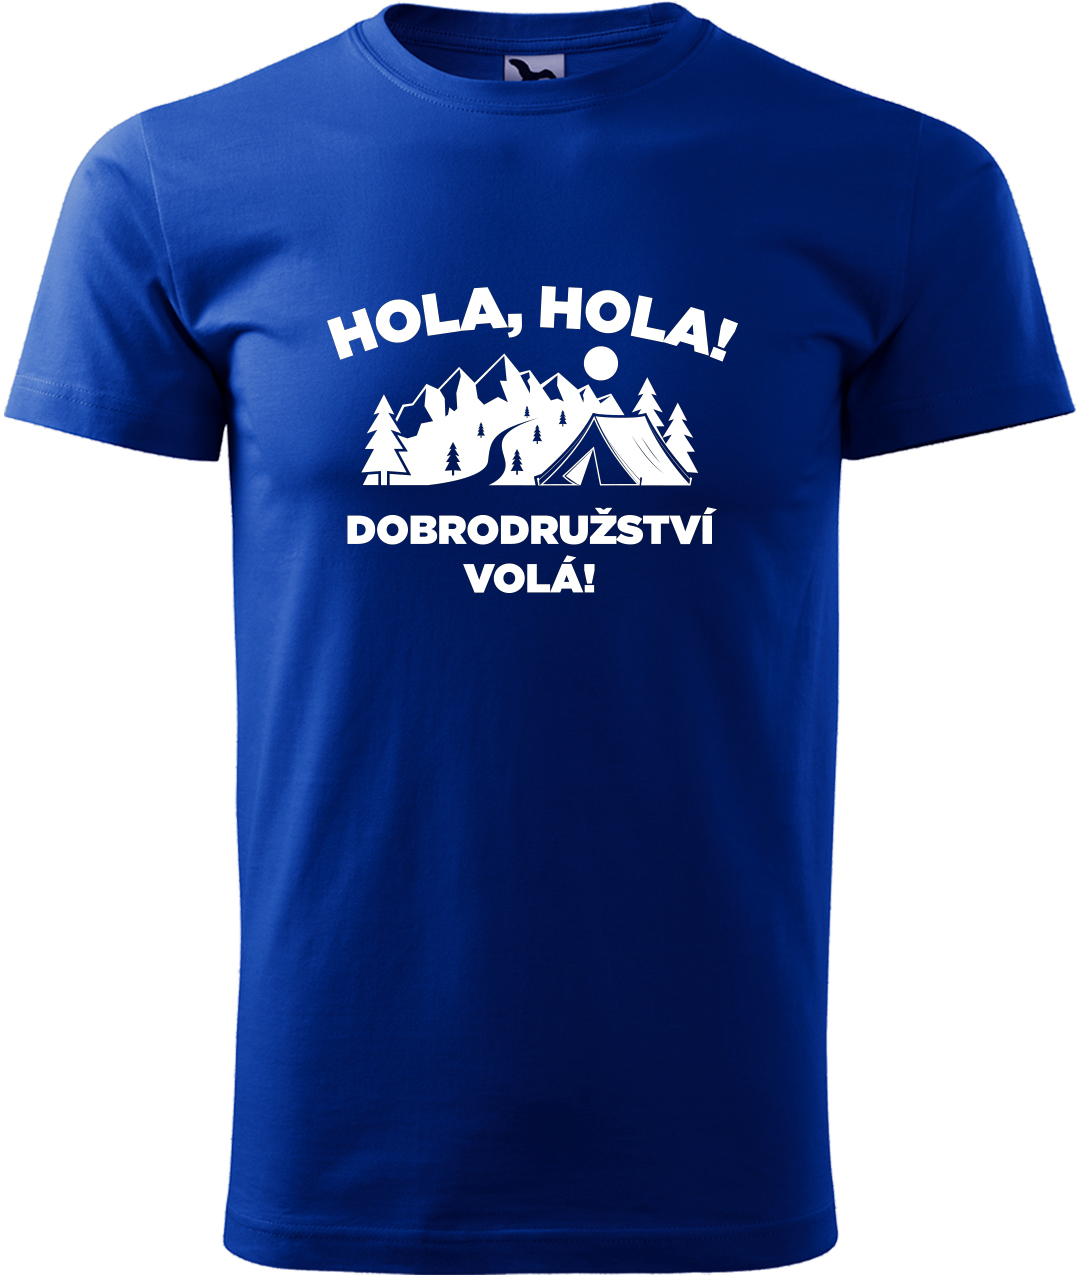 Pánské cestovatelské tričko - Hola hola! Dobrodružství volá! Velikost: S, Barva: Královská modrá (05), Střih: pánský